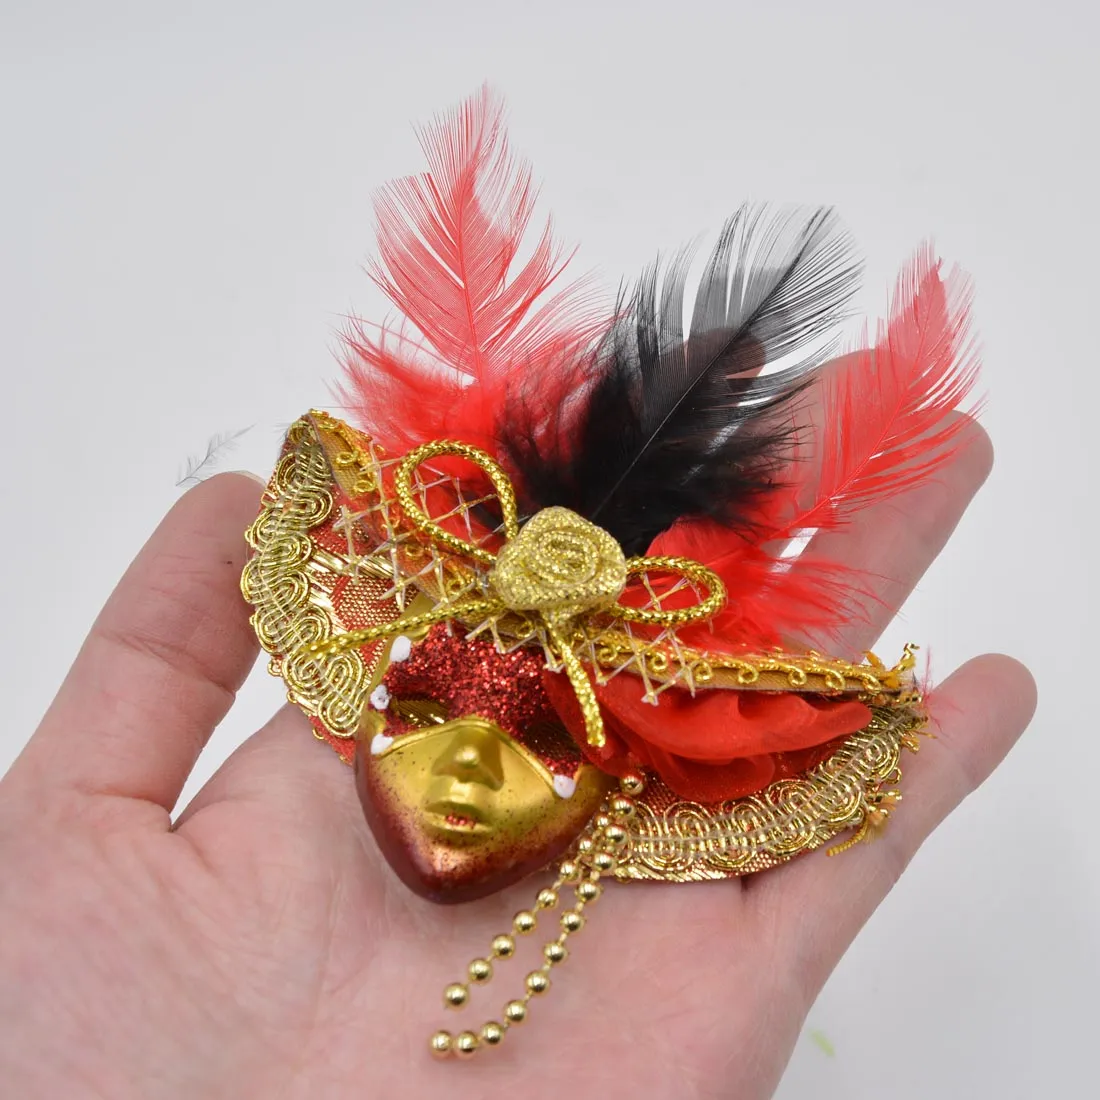 Adesivo magnete per frigorifero mini maschere mascherate Decorazione per feste Mardi Gras 12 pezzi Adesivo per note di lavagna veneziana di piccola bellezza